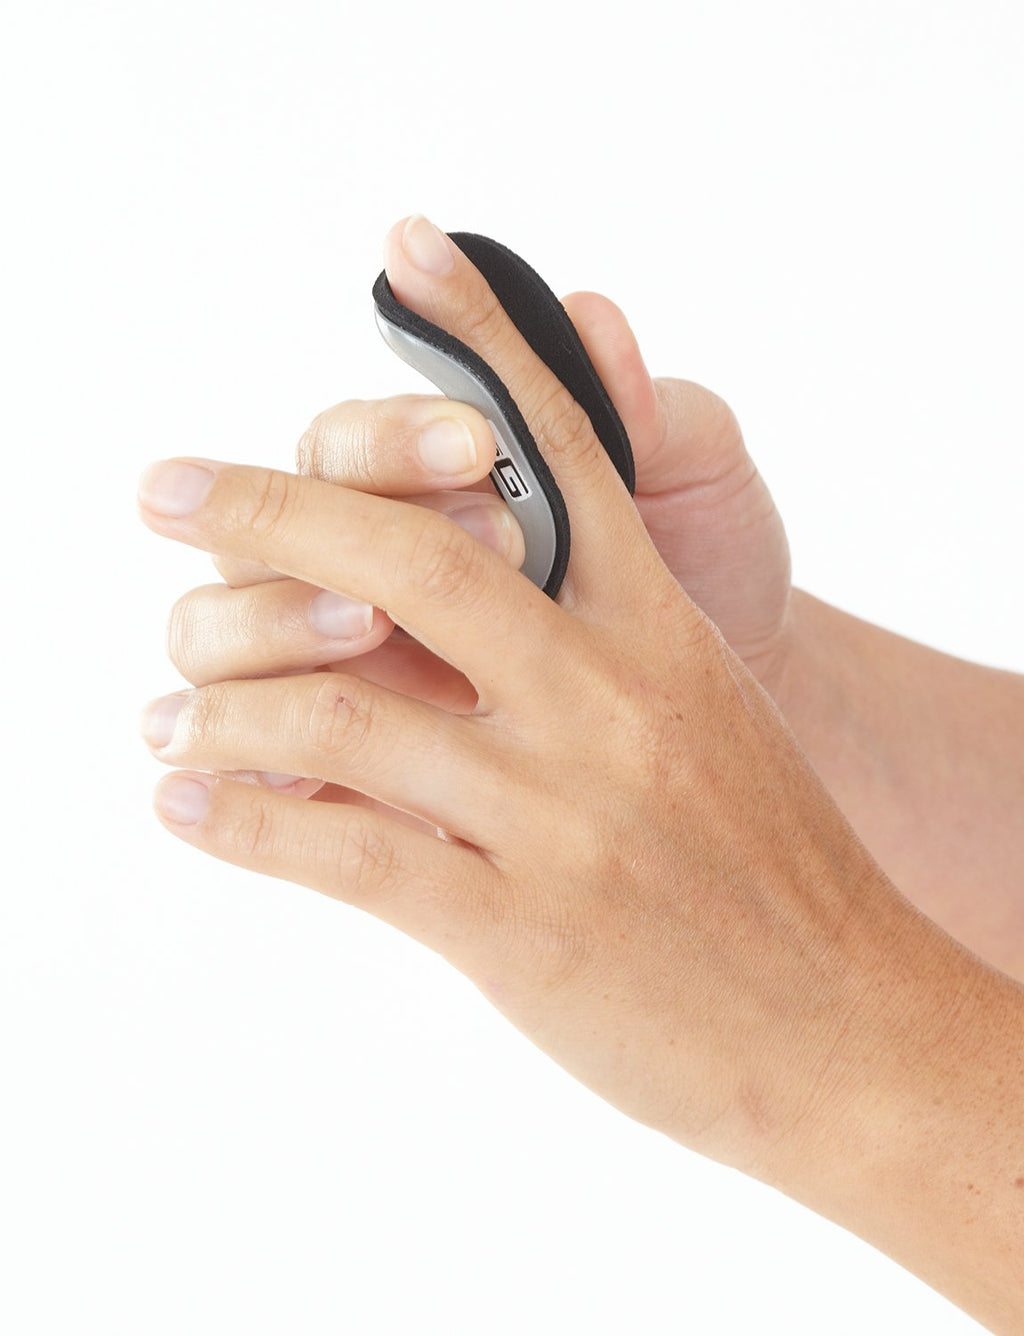 [Australia] - Neo G Finger Splint, Easy-Fit - Support for Trigger Finger, Mallet Finger, Baseball Finger, Strain, Sprains, Broken Fingers, Basketball - Patented Design - Class 1 Medical Device - Medium - Grey - 6cm/2.4in Medium: 6 cm // 2.4 in 